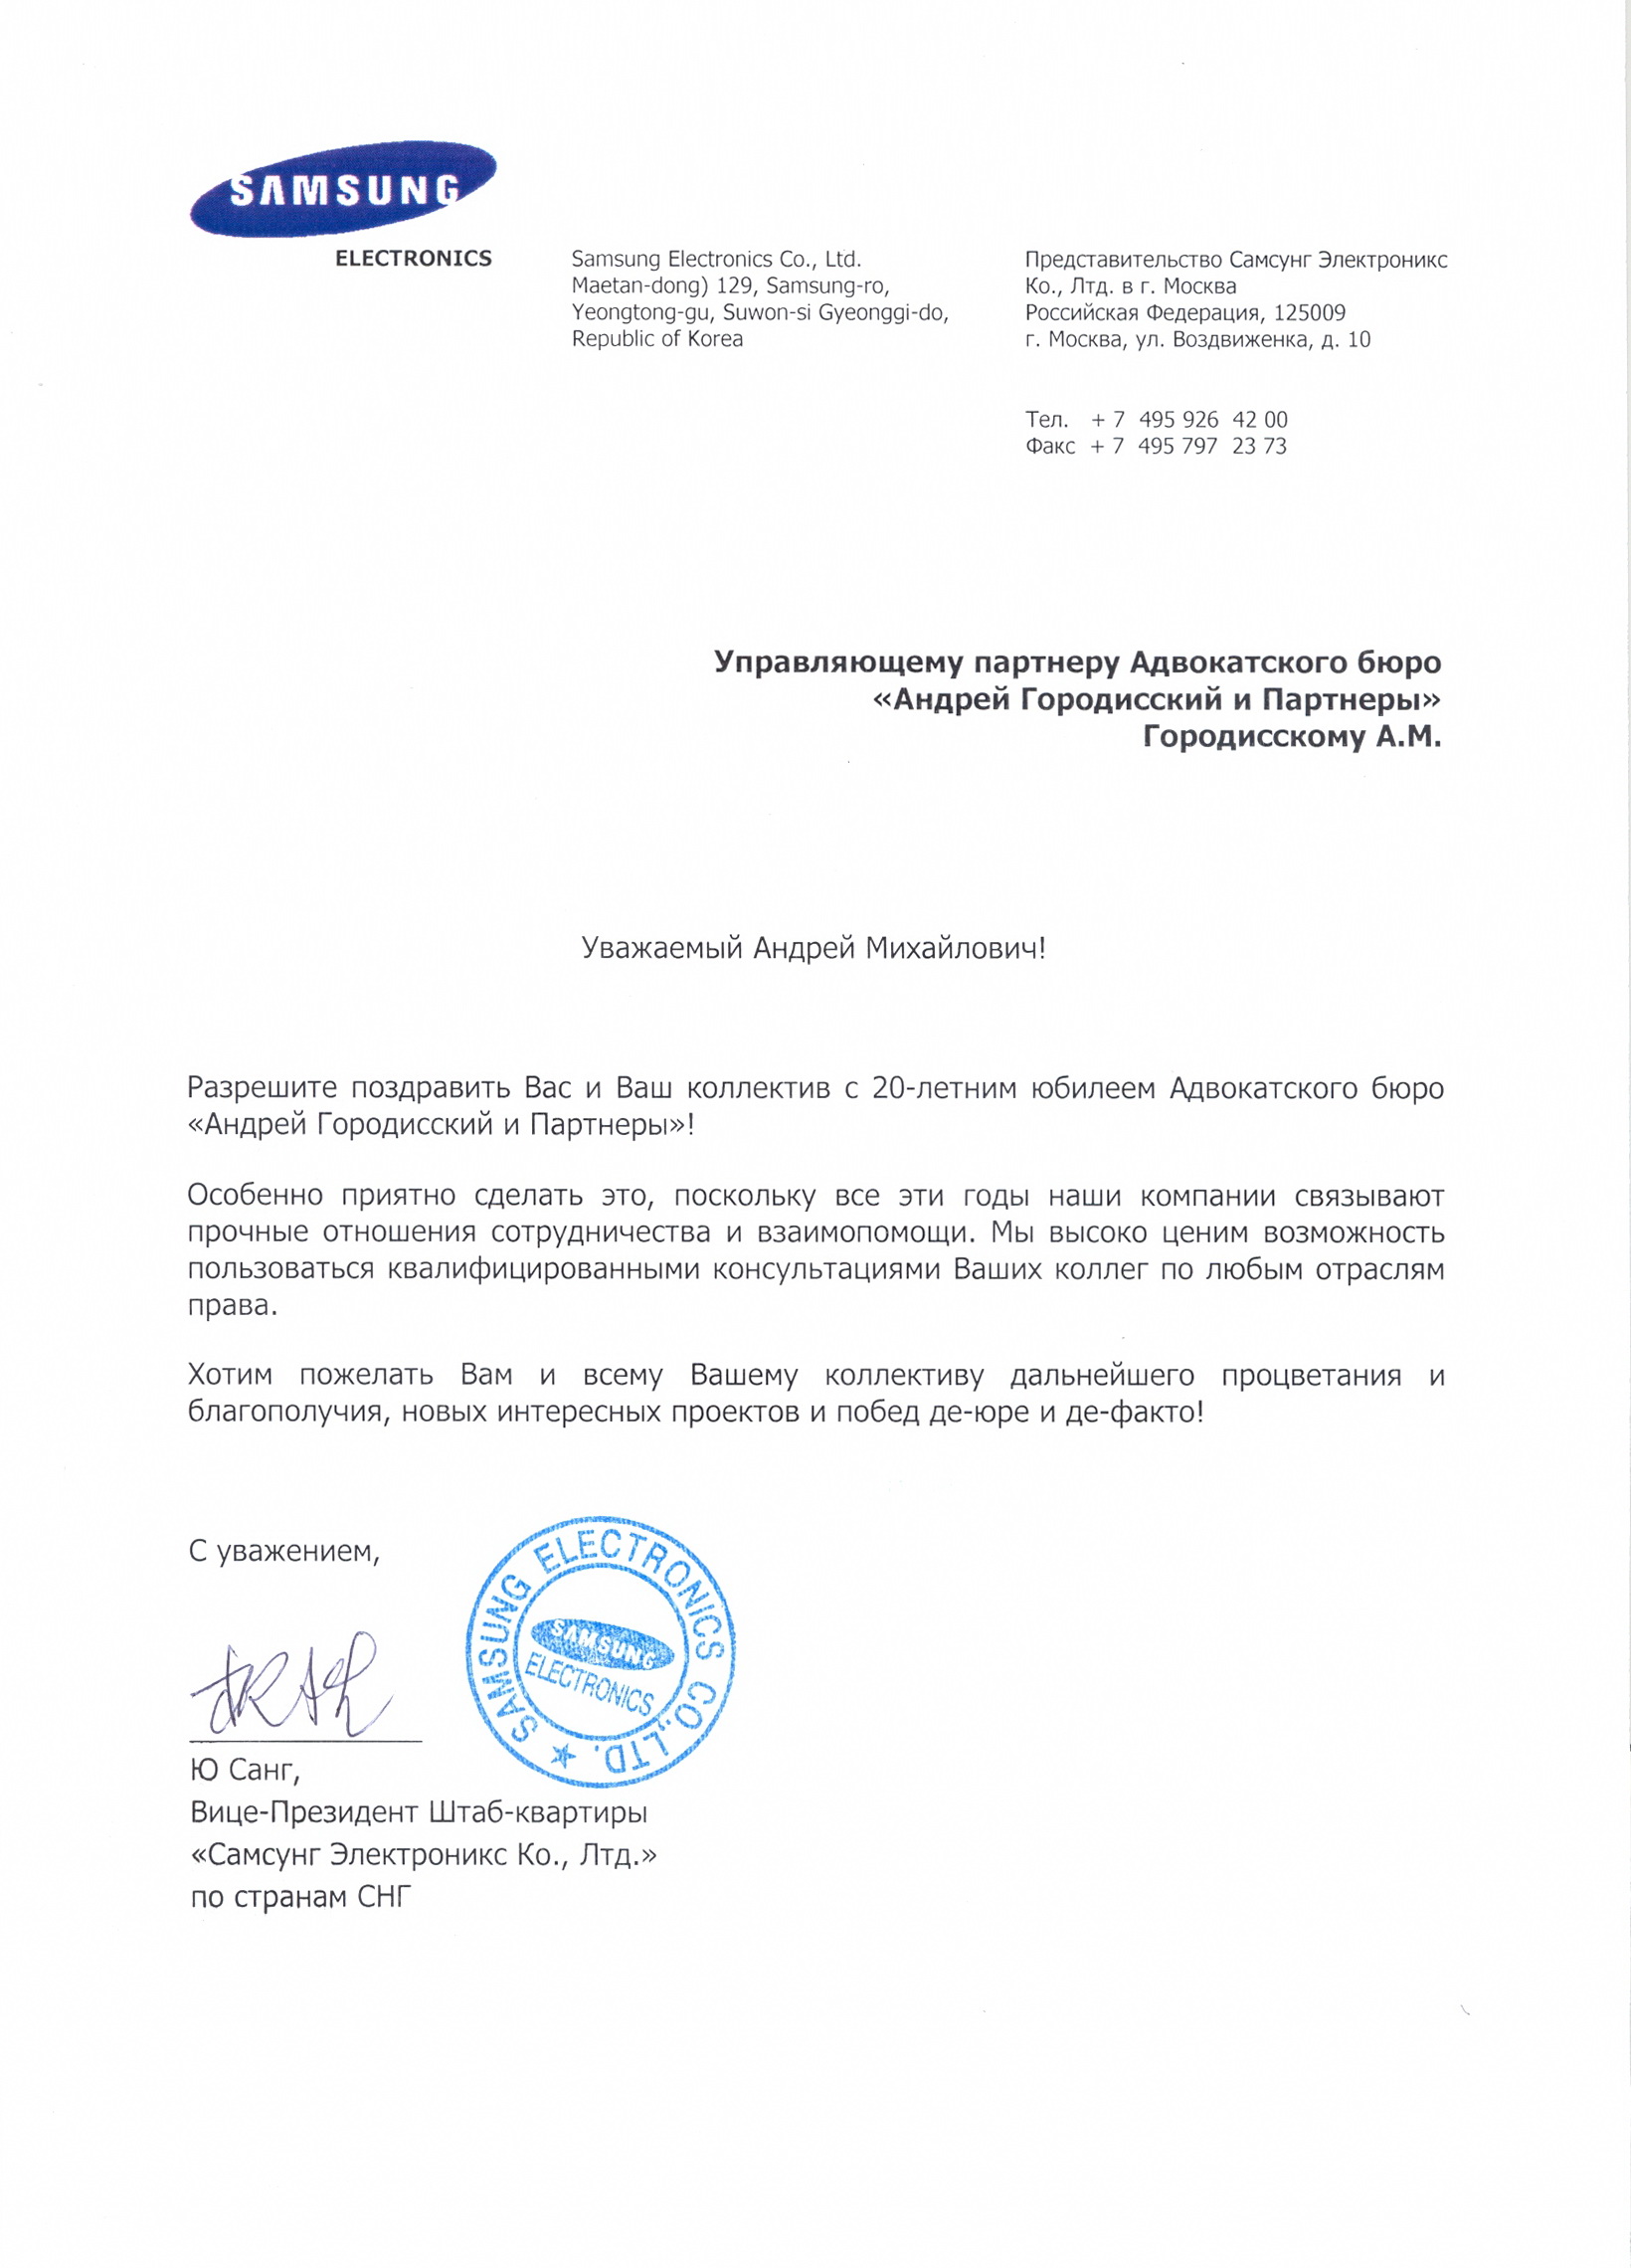 Адвокатское бюро «Андрей Городисский и Партнеры» поздравляют с 20-летием